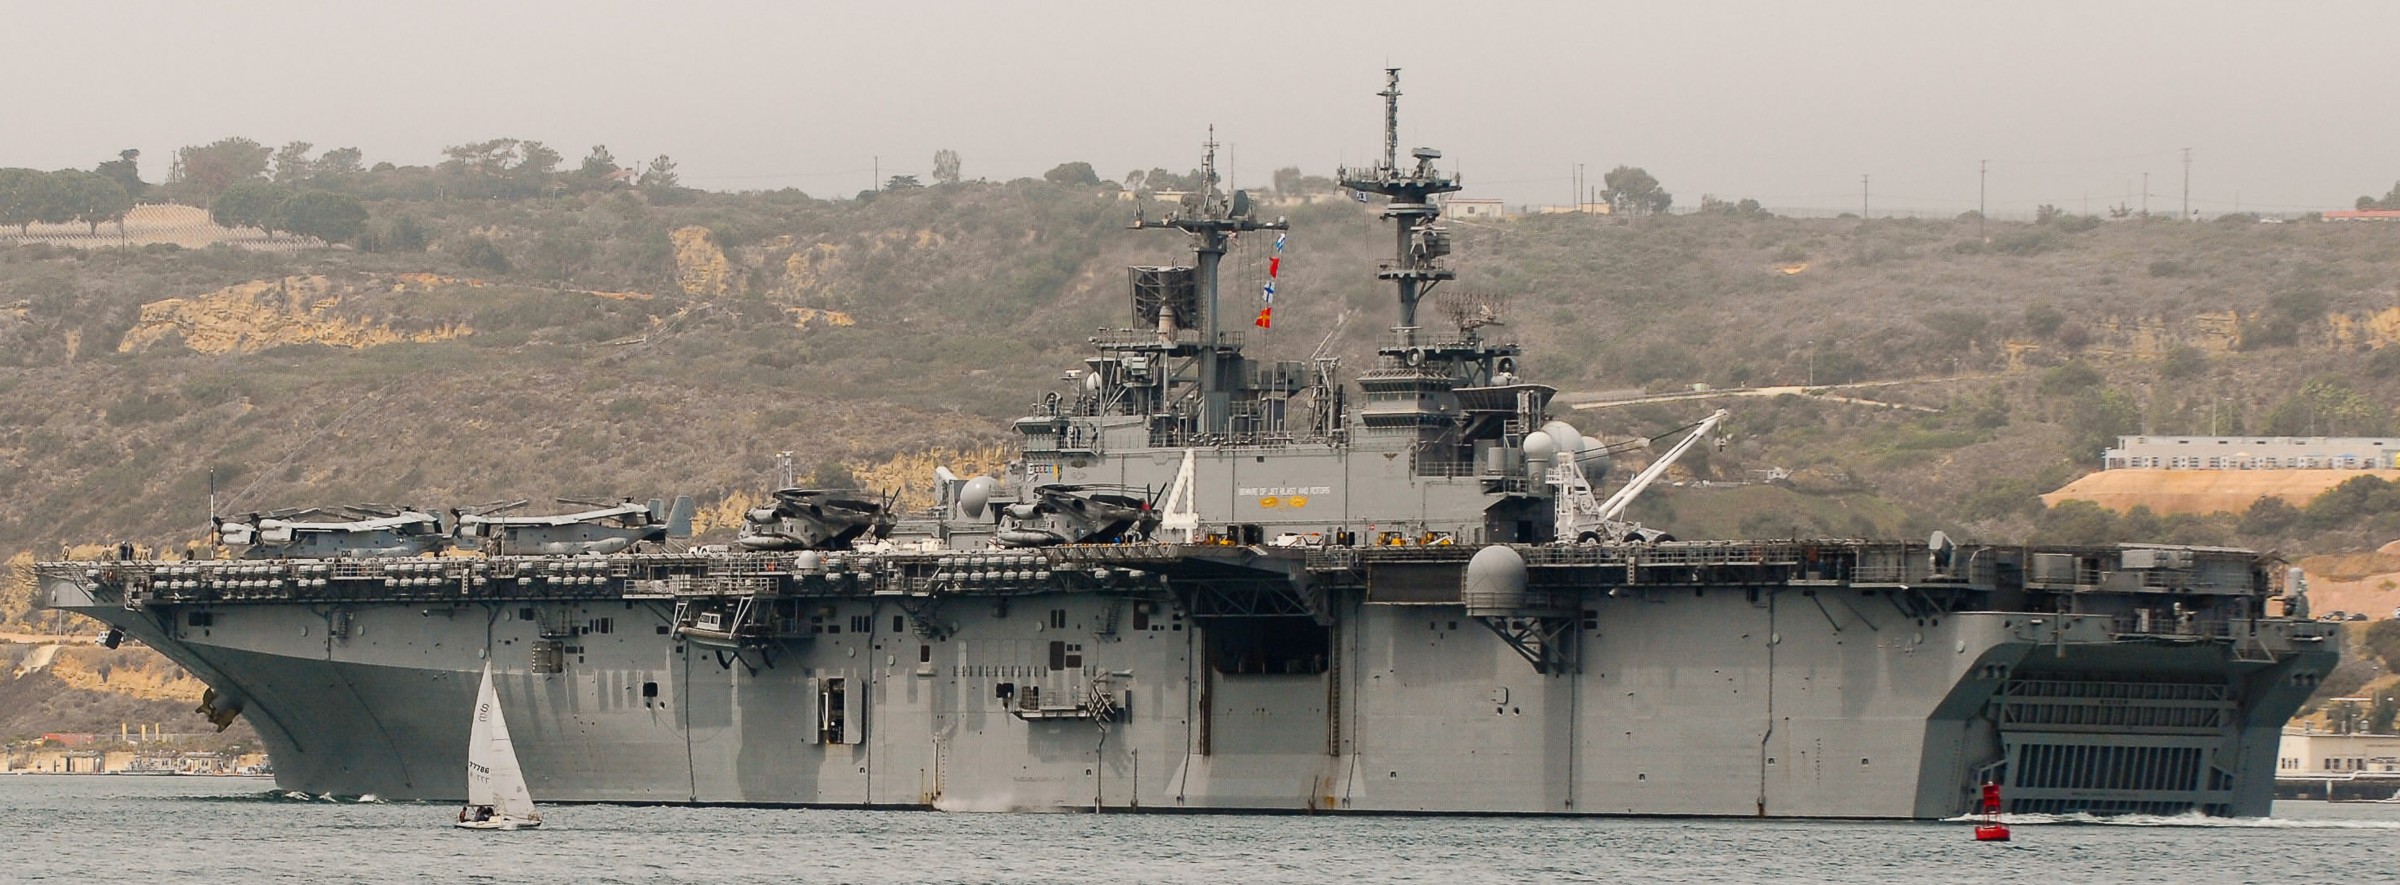 lhd-4 uss boxer wasp class amphibious assault ship dock landing us navy marines vmm-166 certex 81